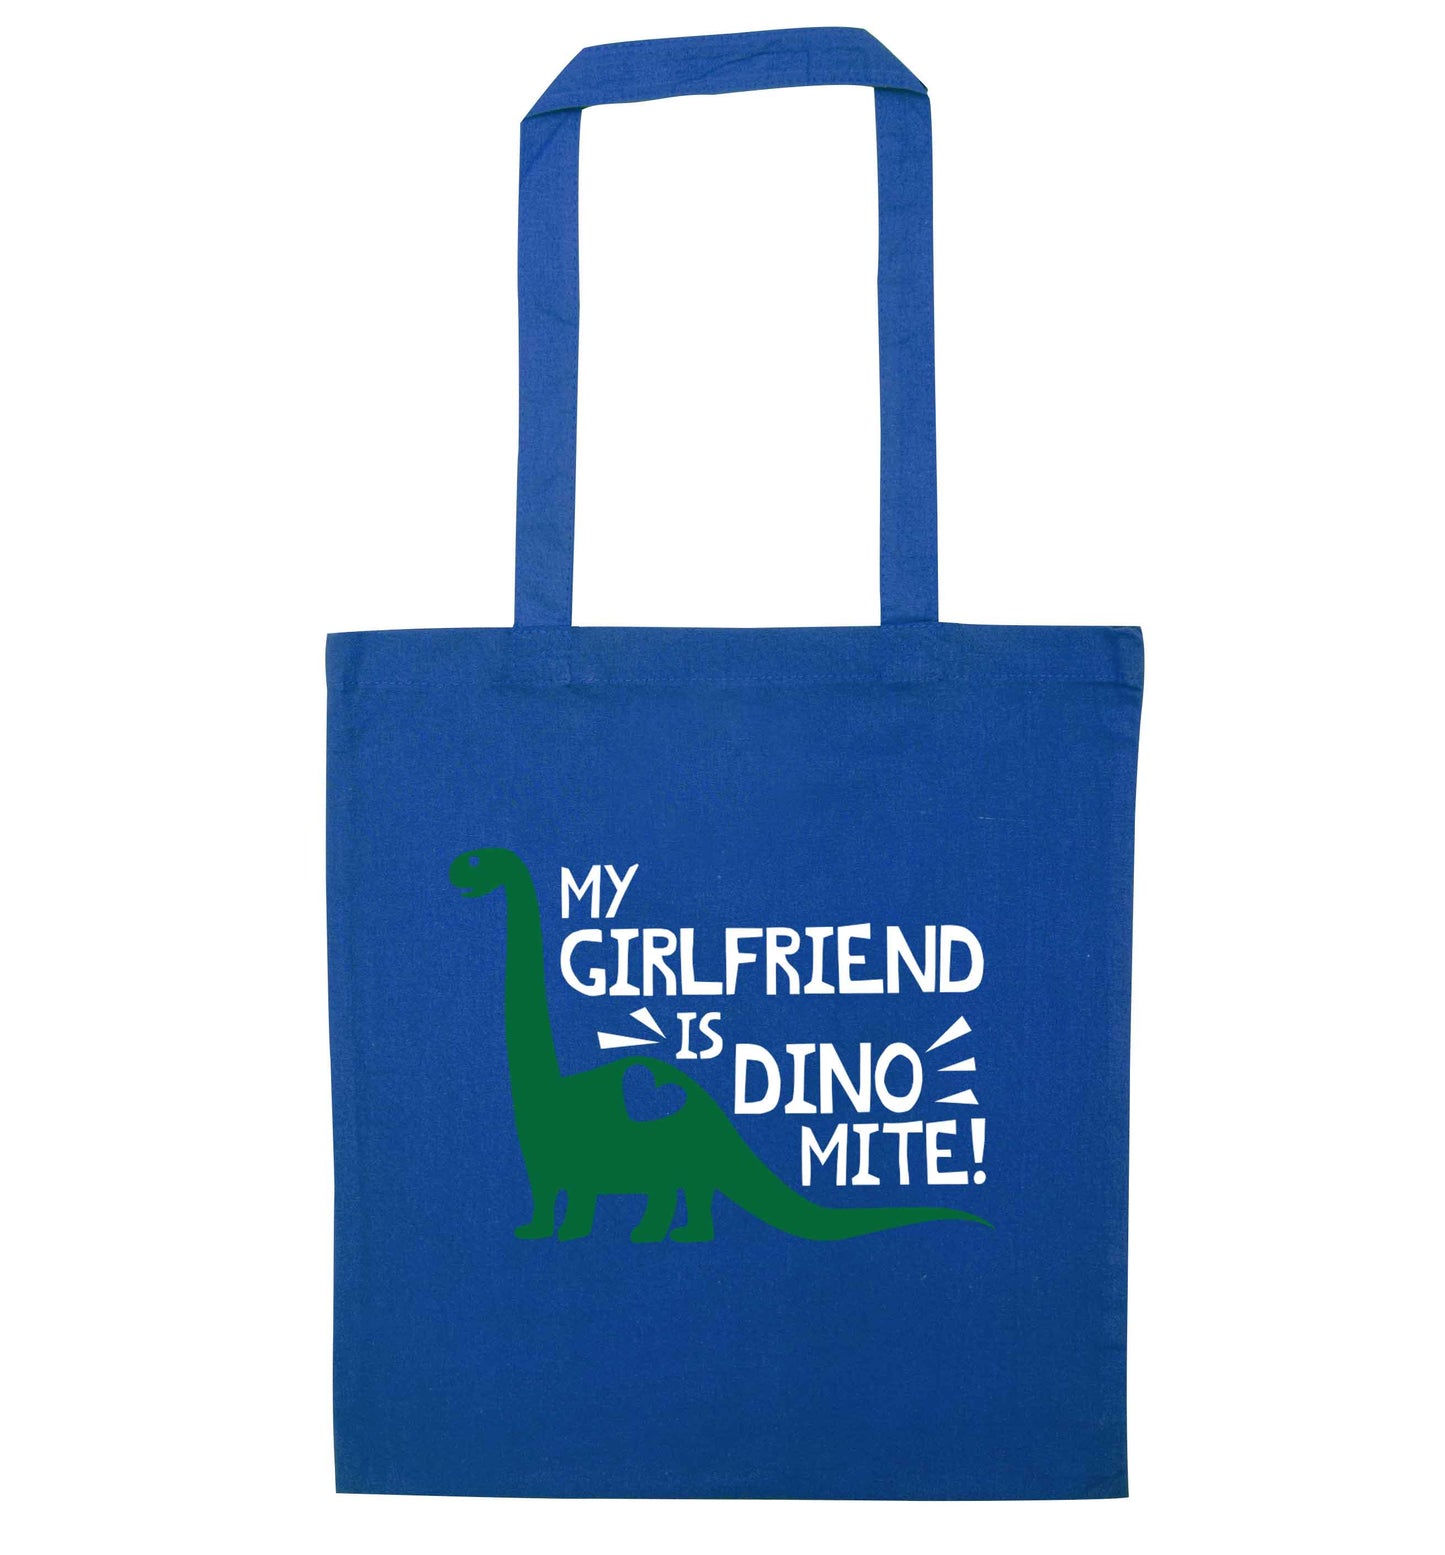 My girlfriend is dinomite! blue tote bag